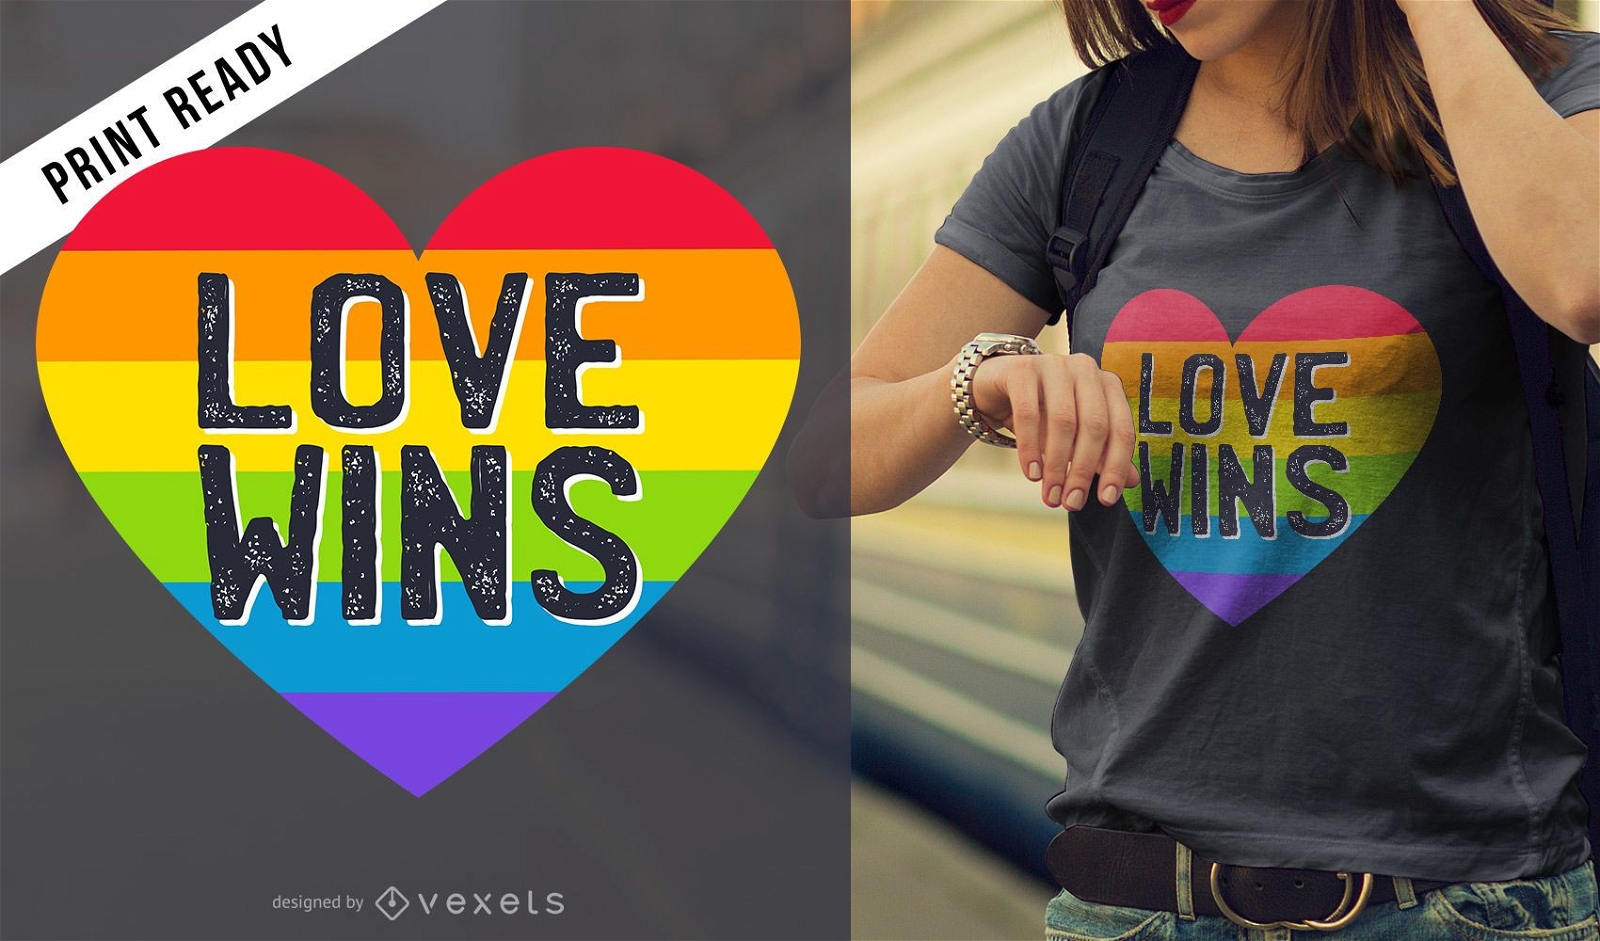 El amor gana el dise?o de la camiseta.